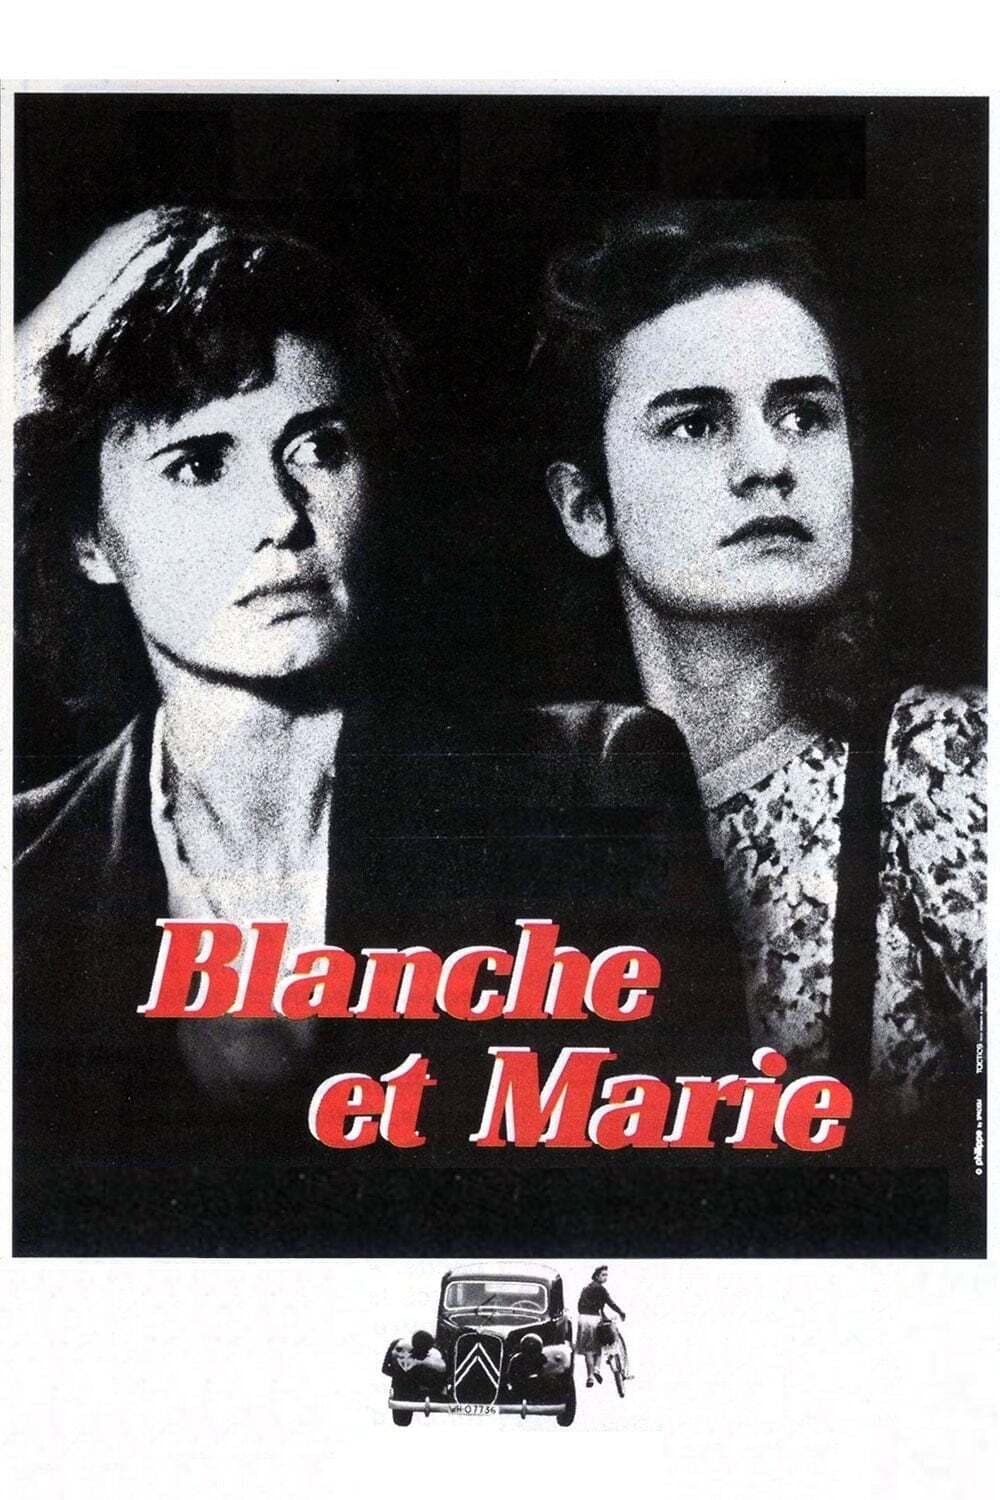 Caratula de Blanche et Marie (Blanche y Marie) 